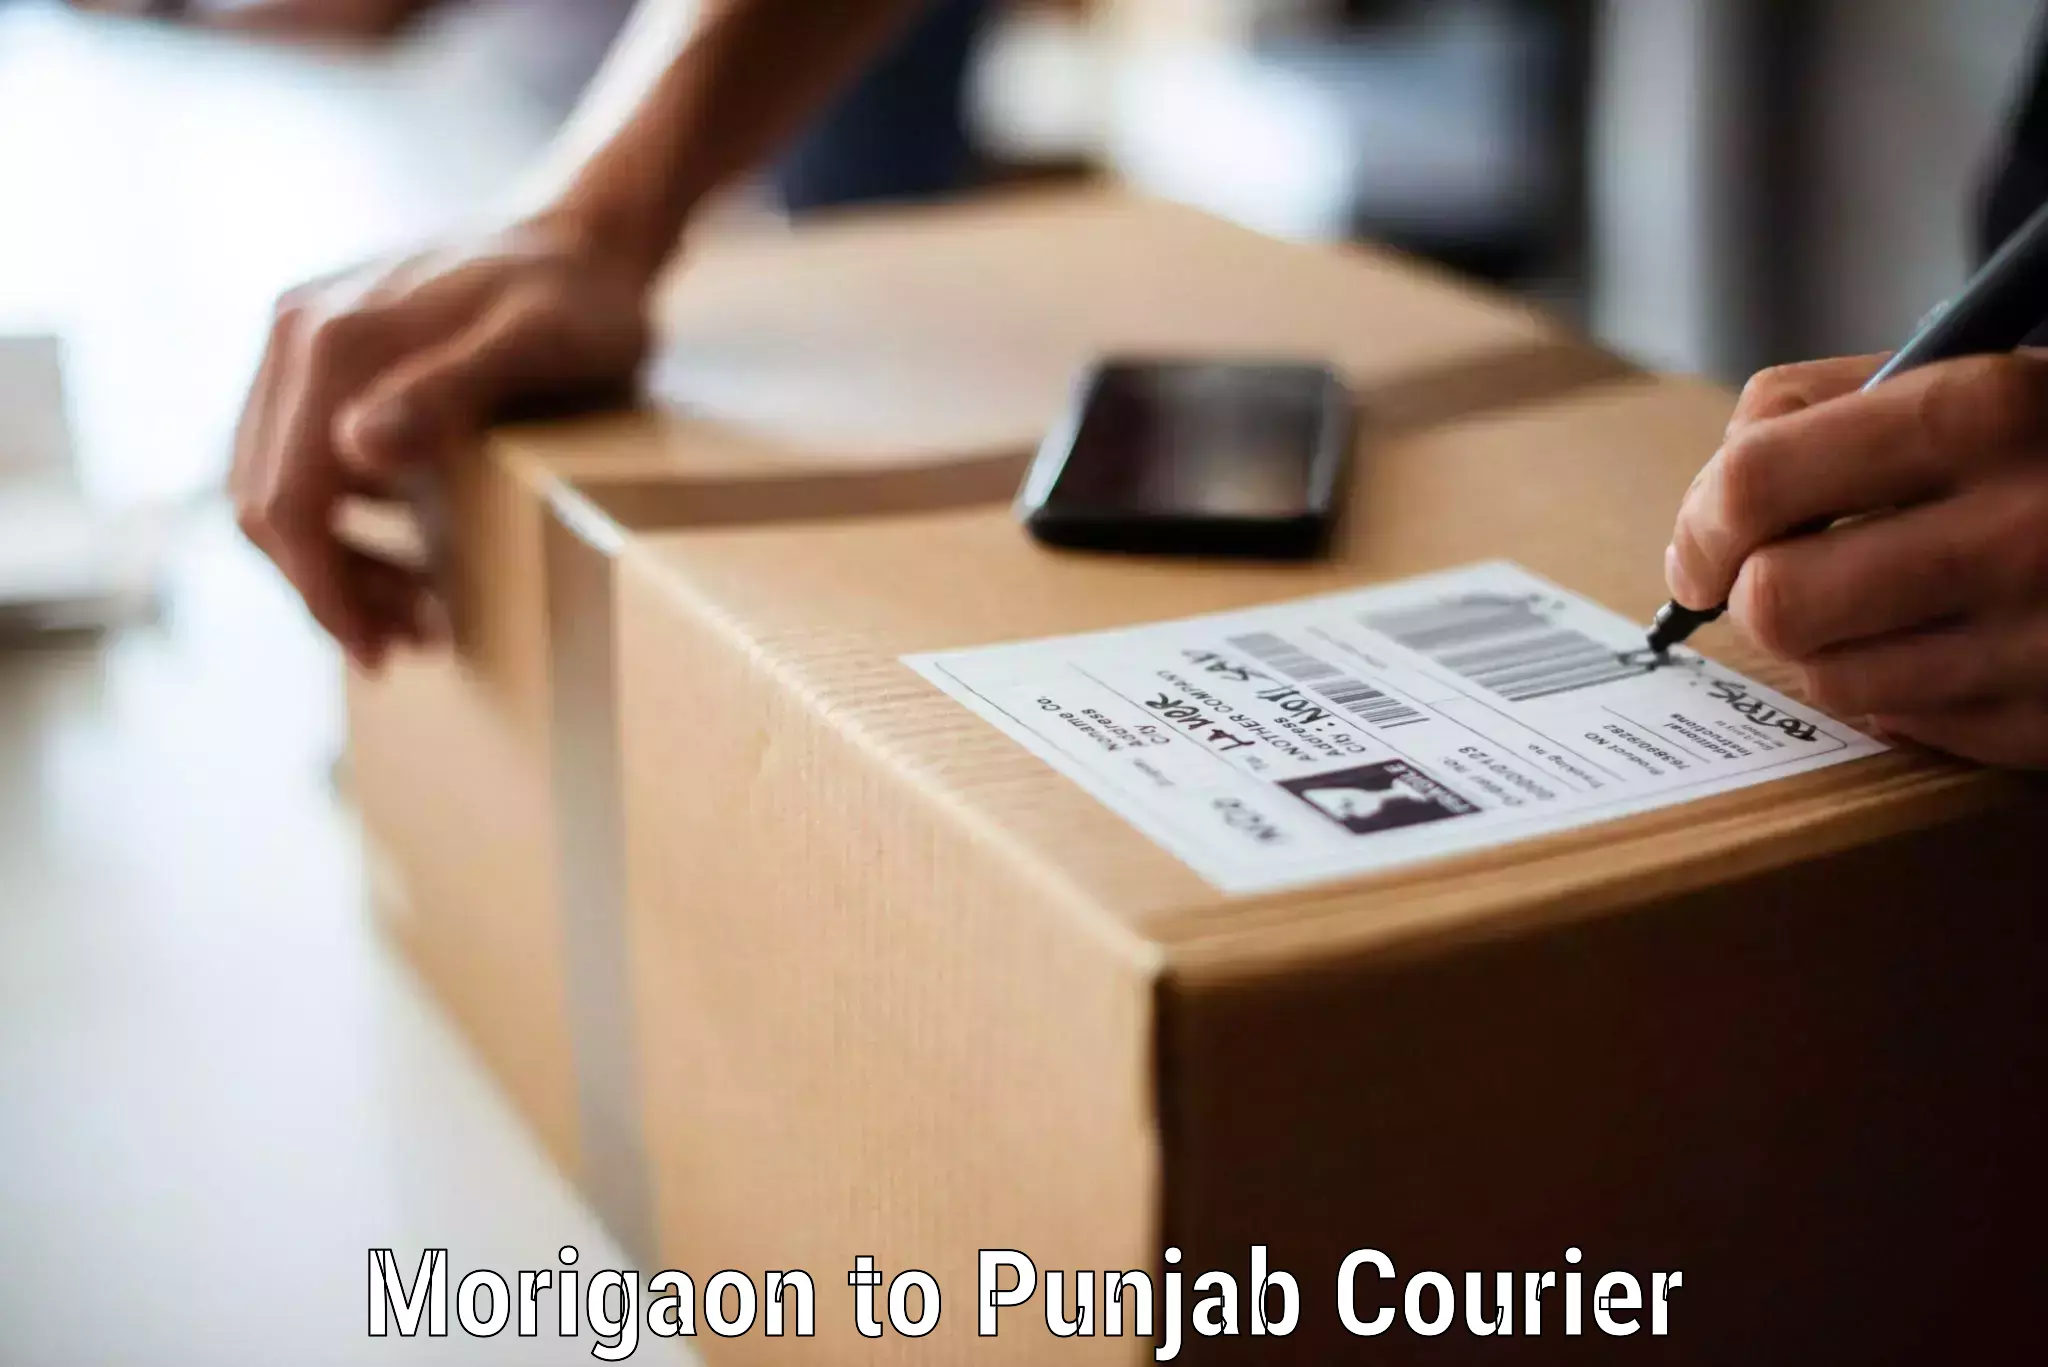 Furniture transport experts Morigaon to Punjab